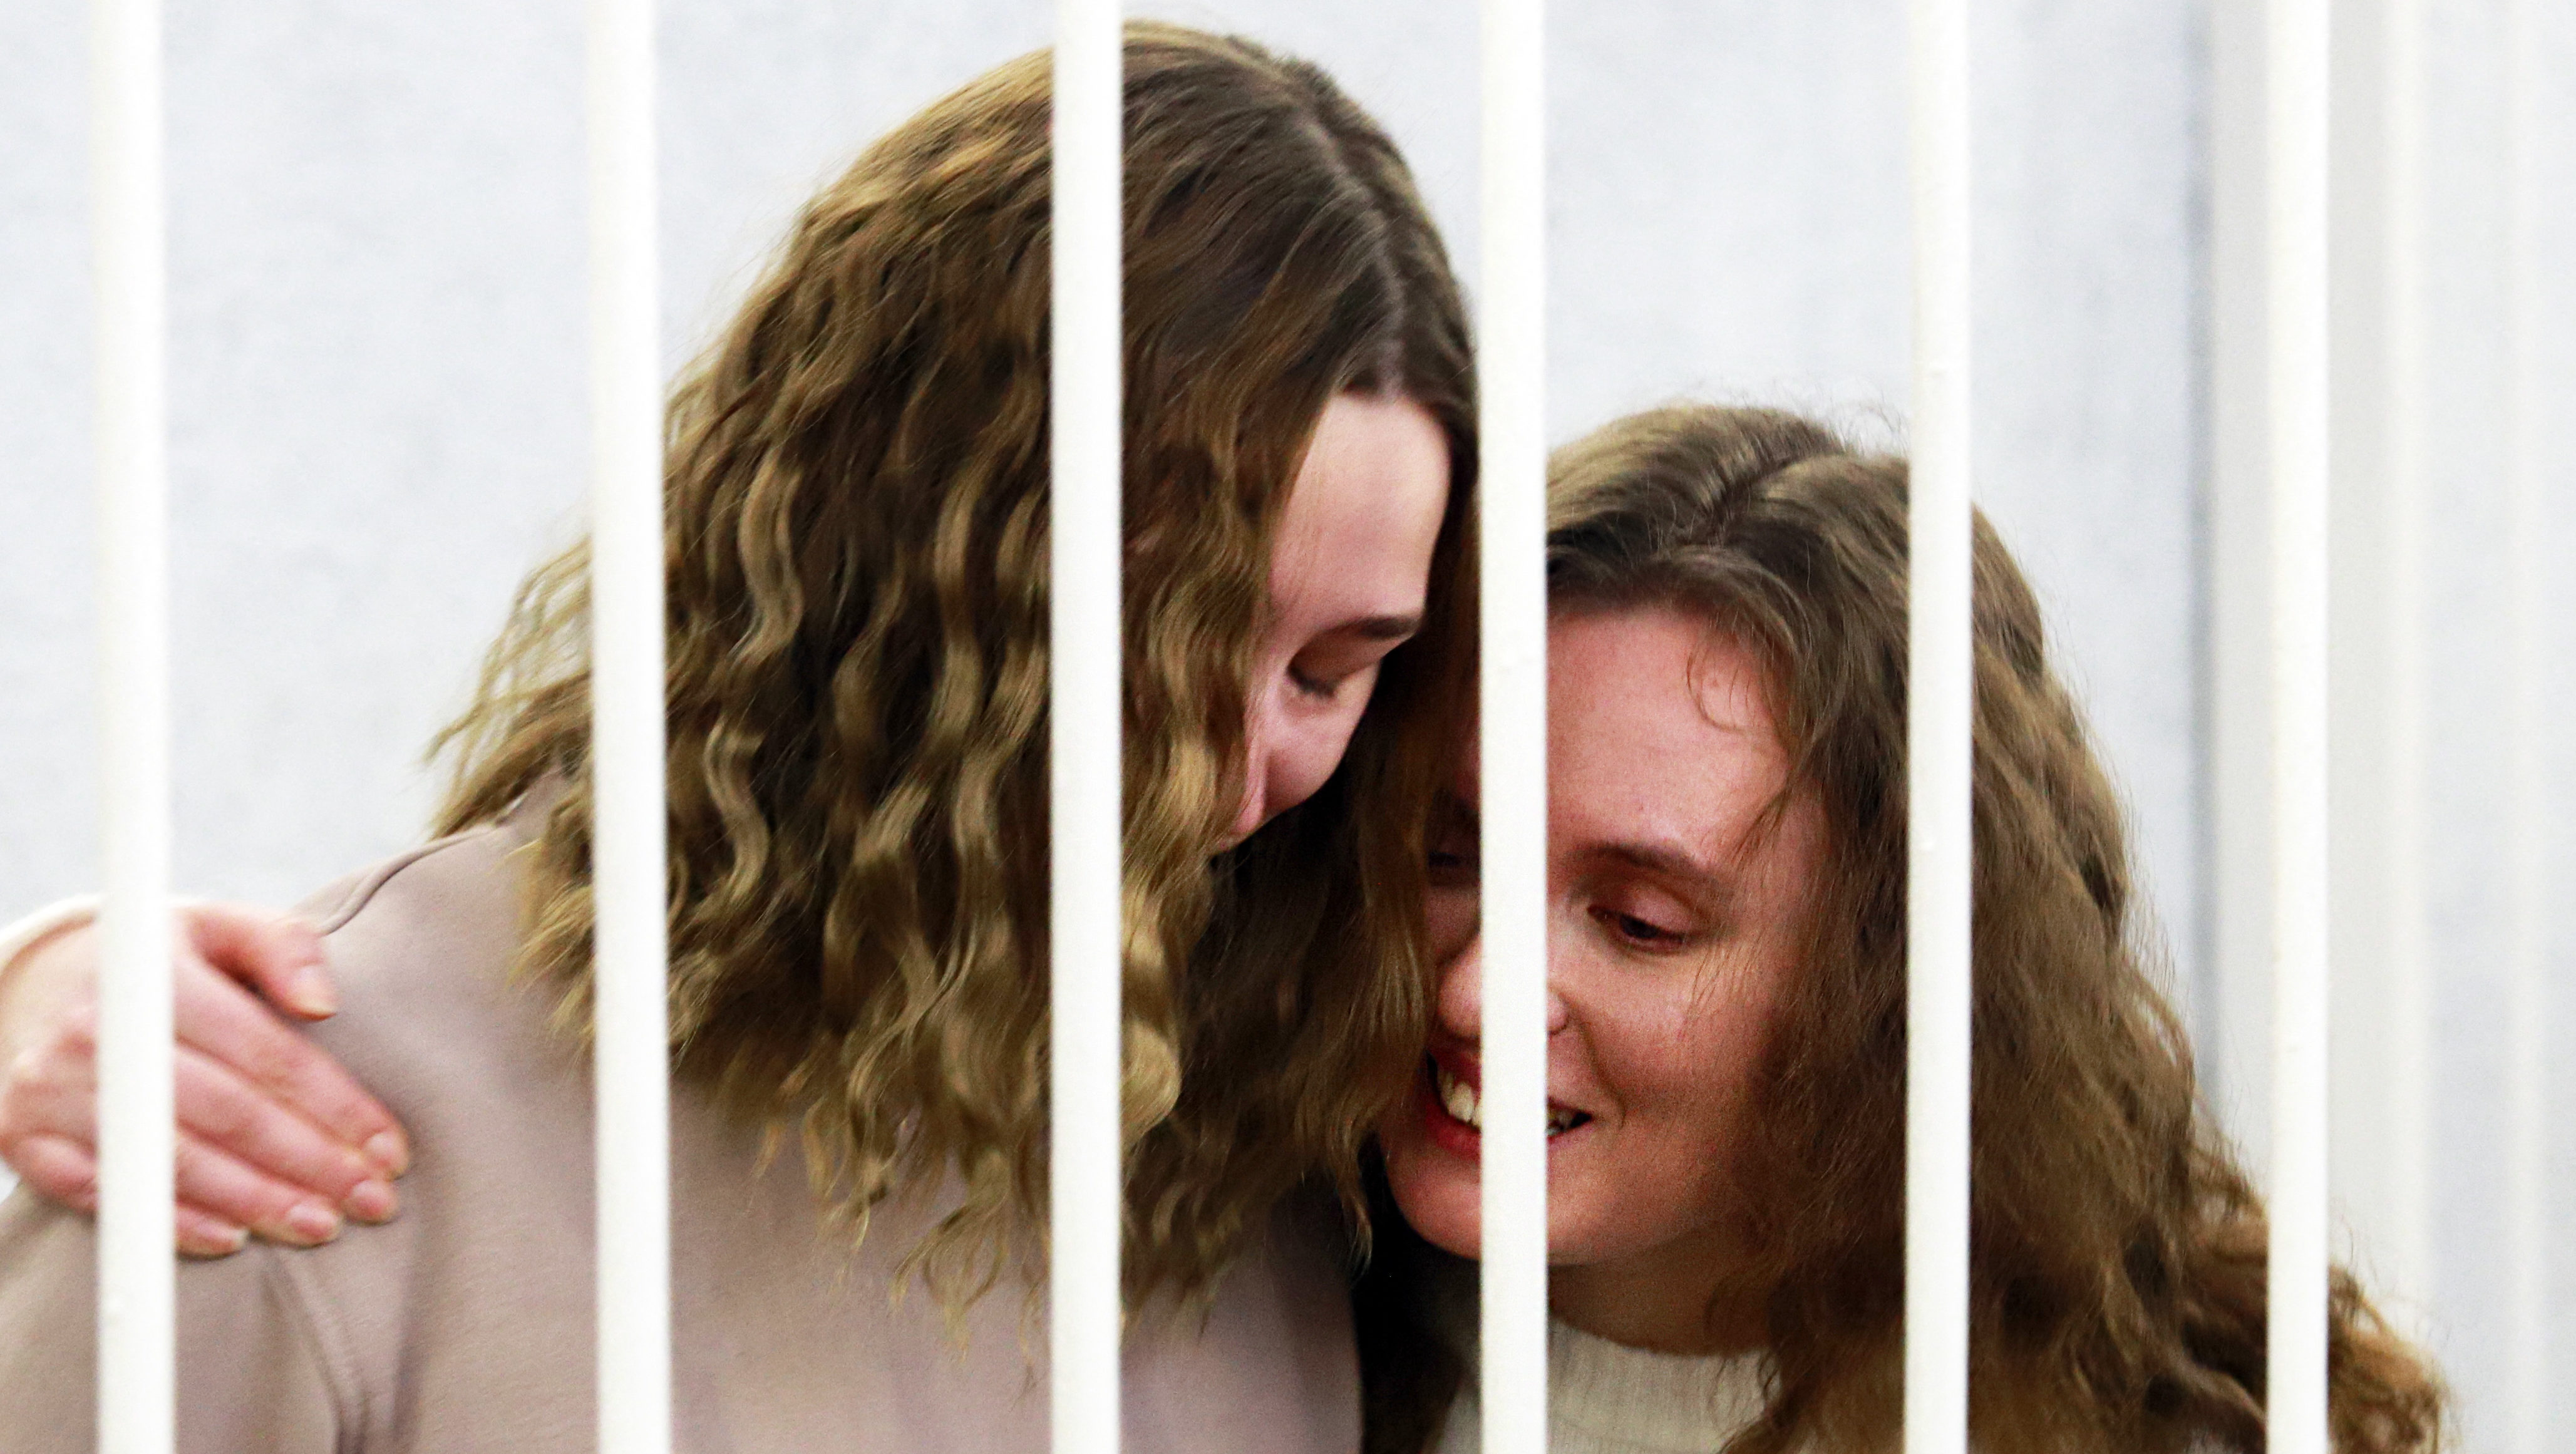 Élőben közvetítettek egy fehérorosz tüntetést, két év börtönt kaptak